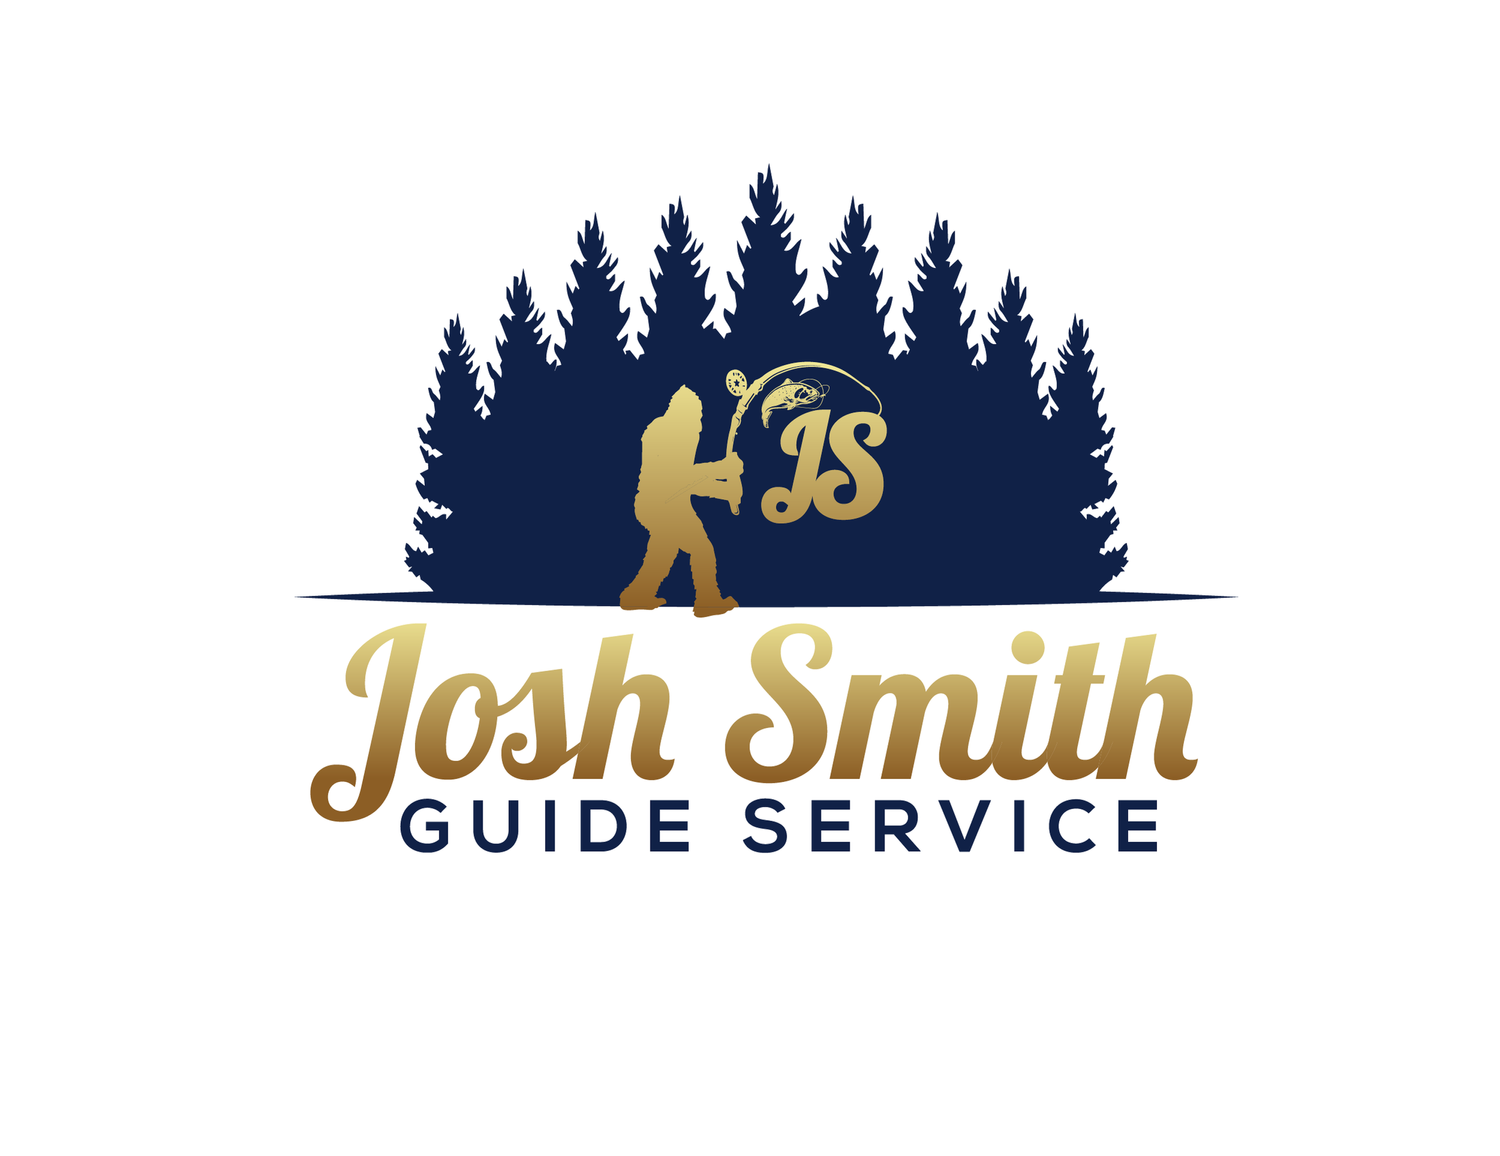 Josh Smith Guide Service